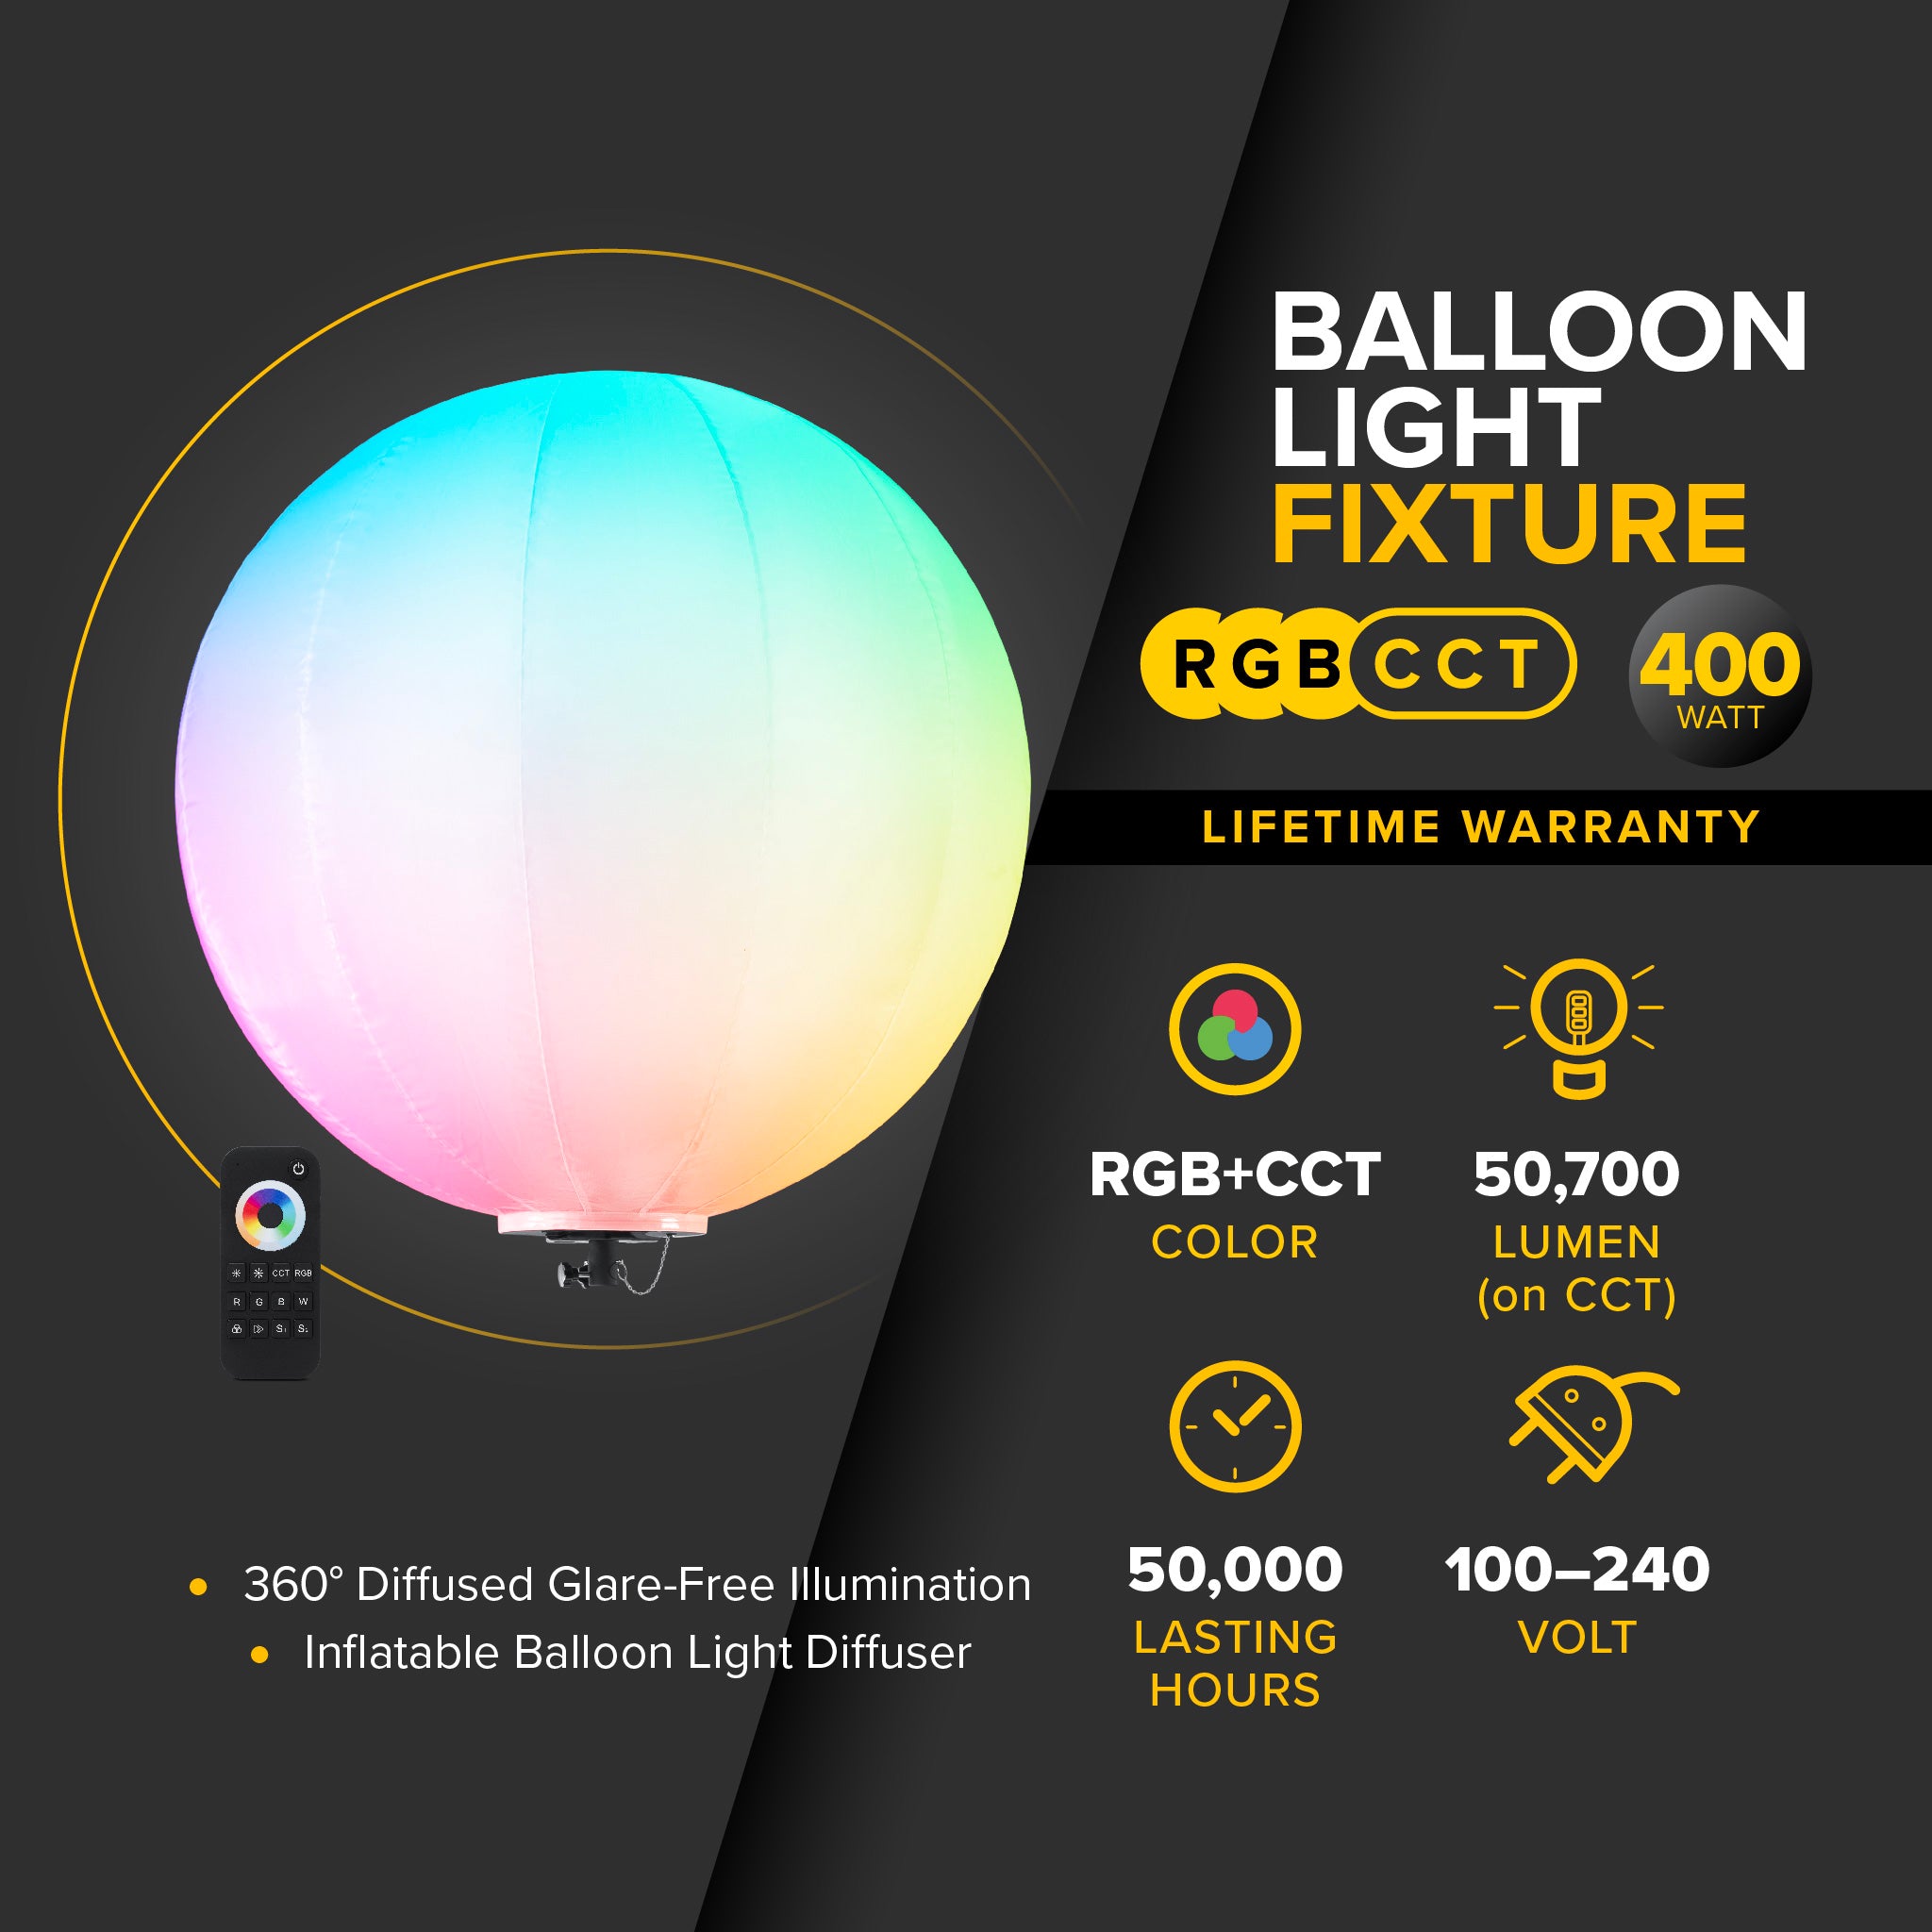 G3 - 400 Watt RGB + CCT LED Balloon Light Fixture